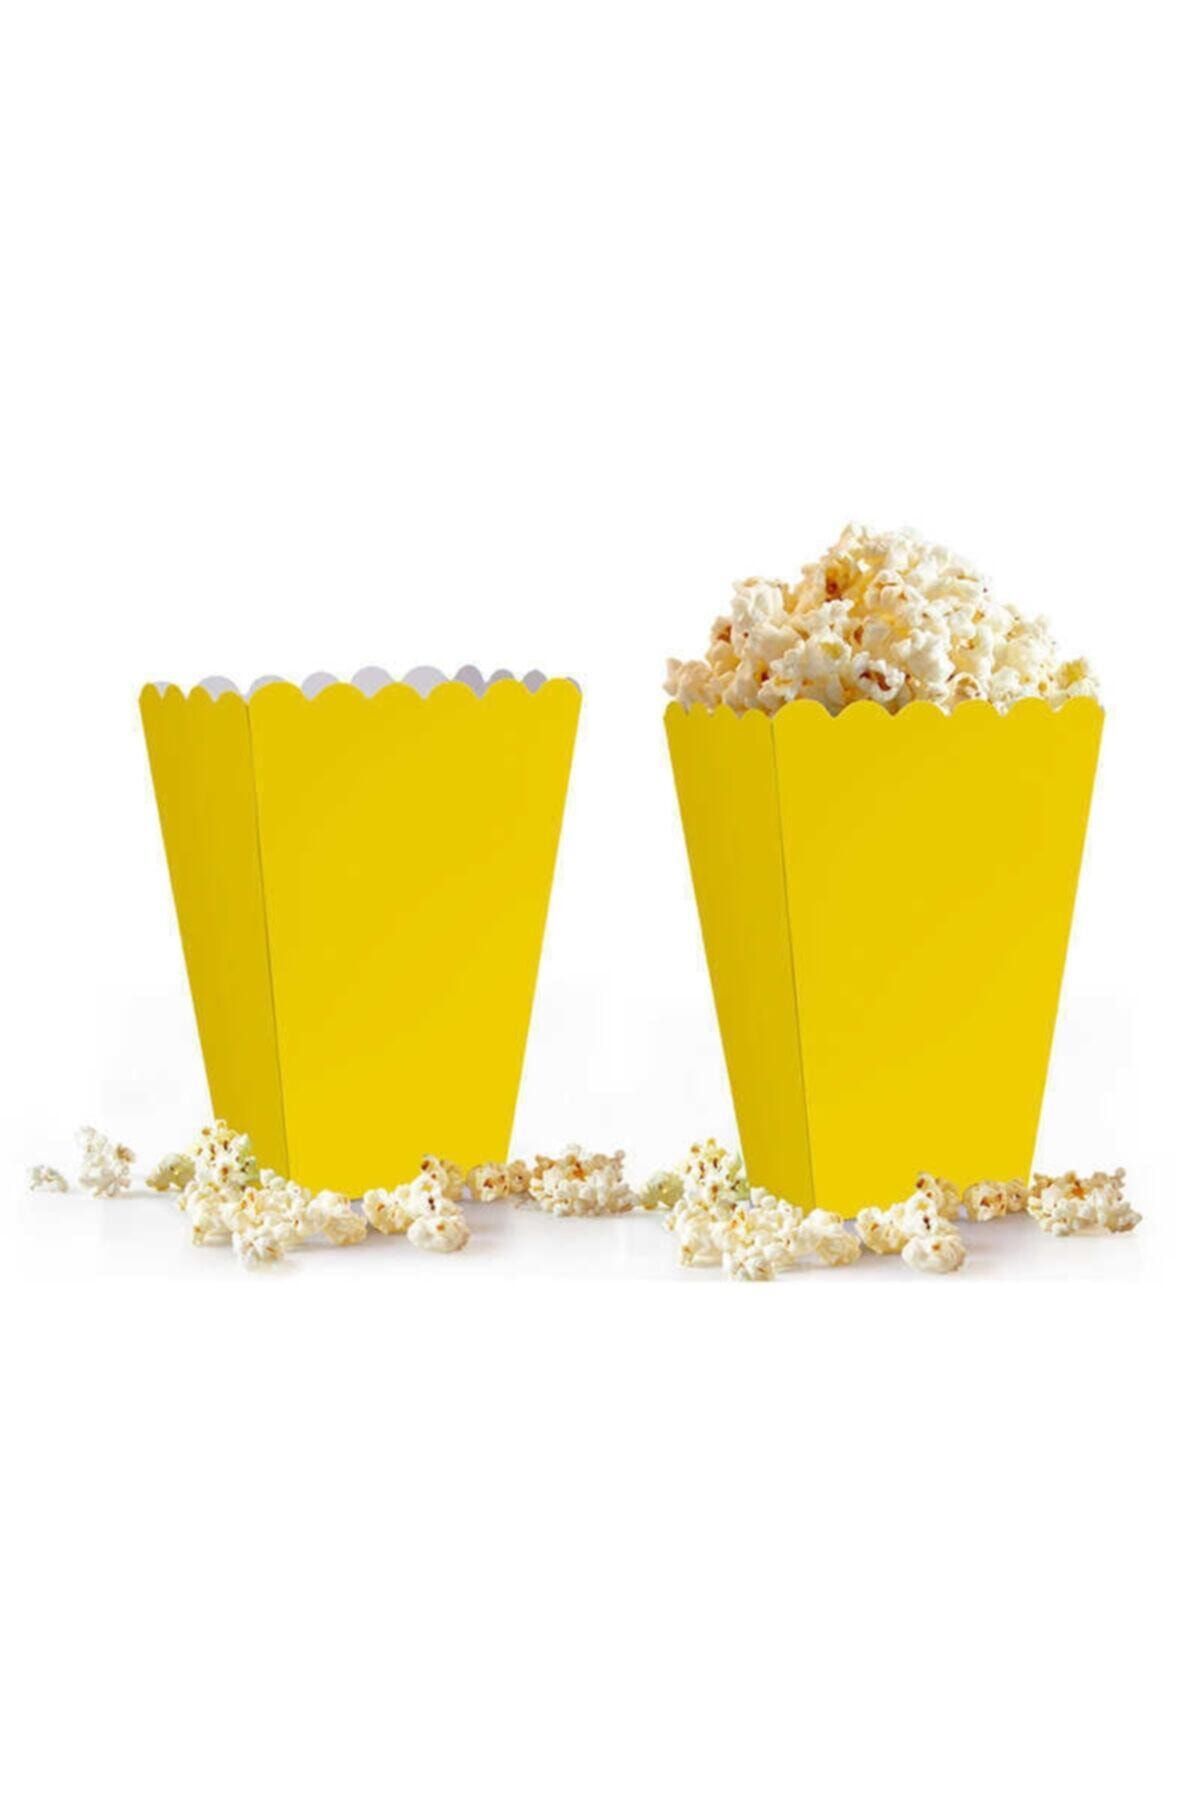 papercraft Popcorn Sarı Renkli Mısır Kutusu 8 Adet